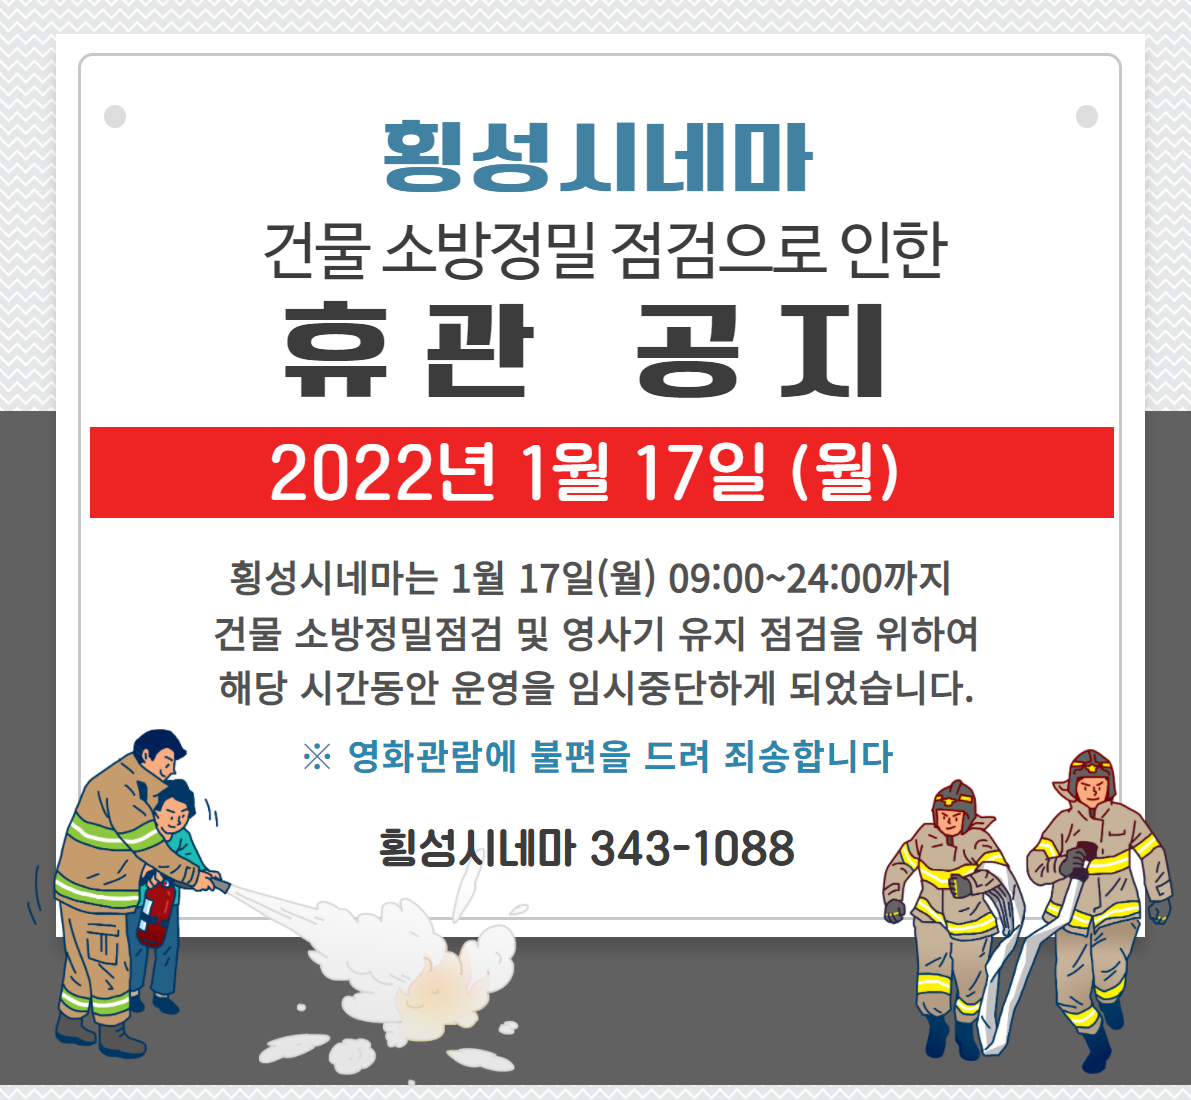 횡성시네마 건물 소방정밀 점검으로 인한 휴관 공지<2022. 1. 17.(월)>